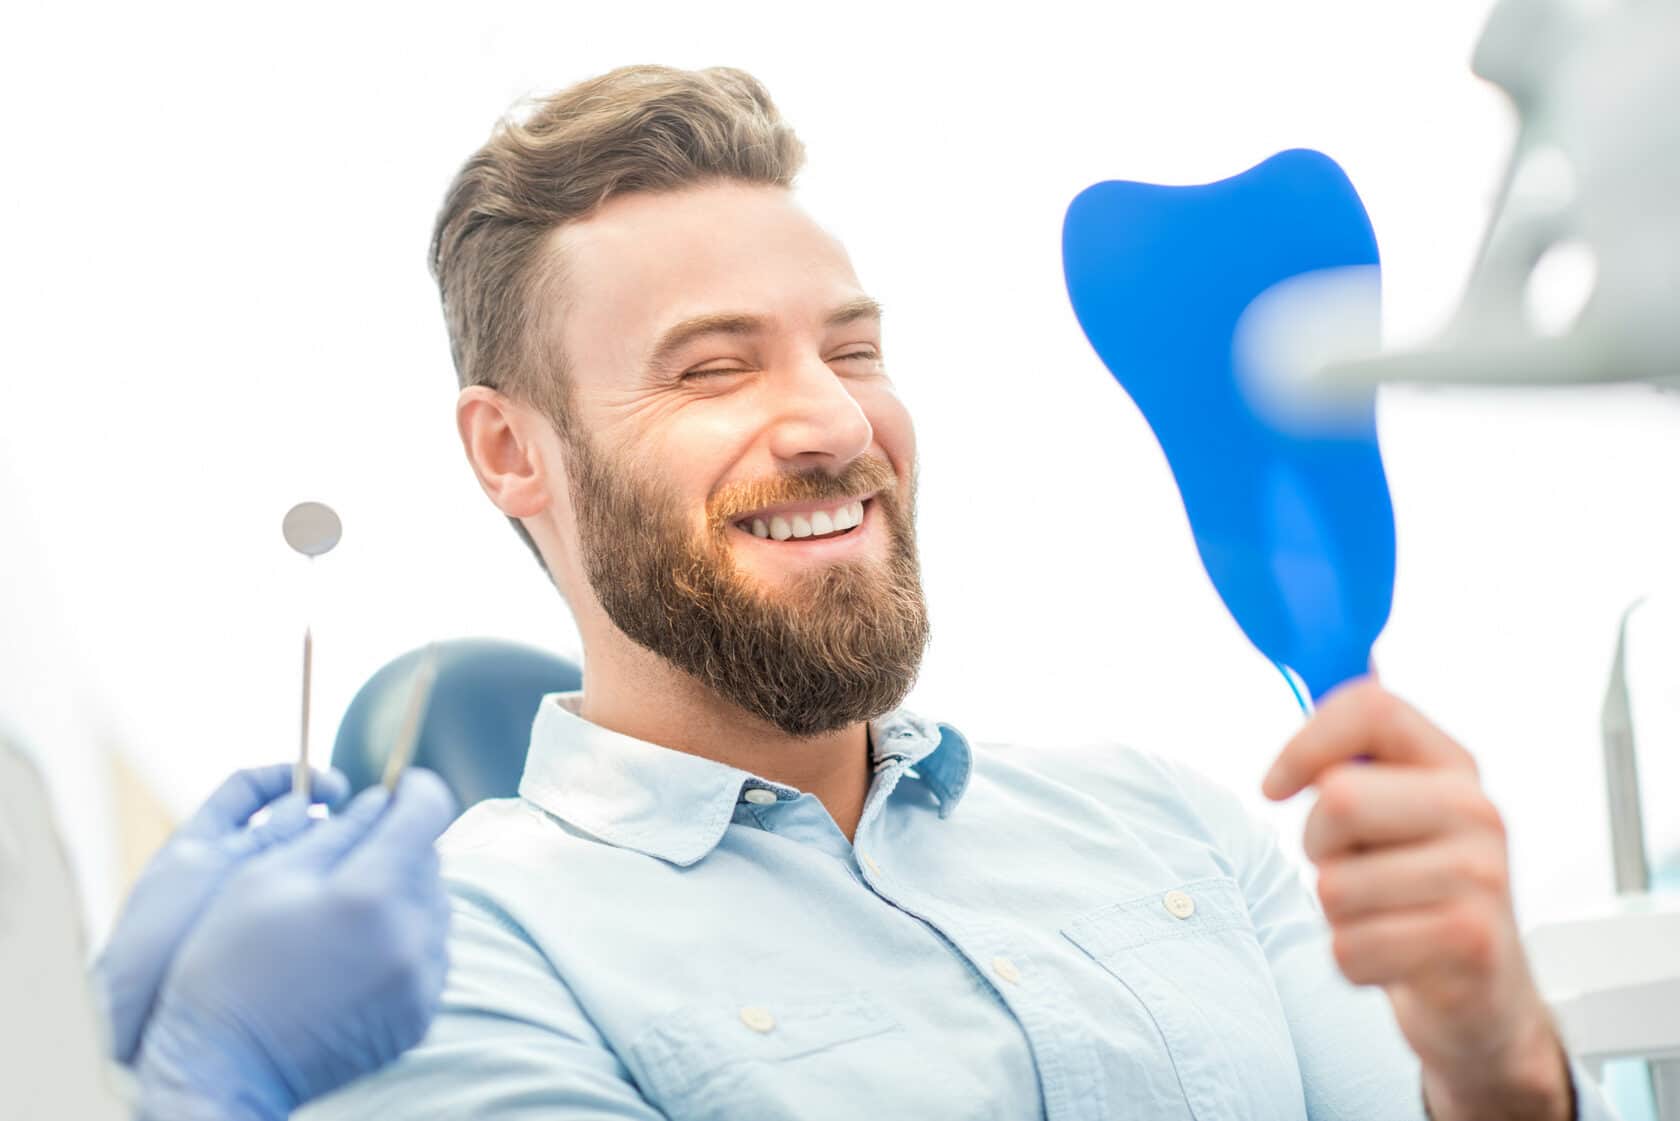 Гигиеническая чистка полости рта и покрытием зубов фторлаком для Вас всего 4000 руб